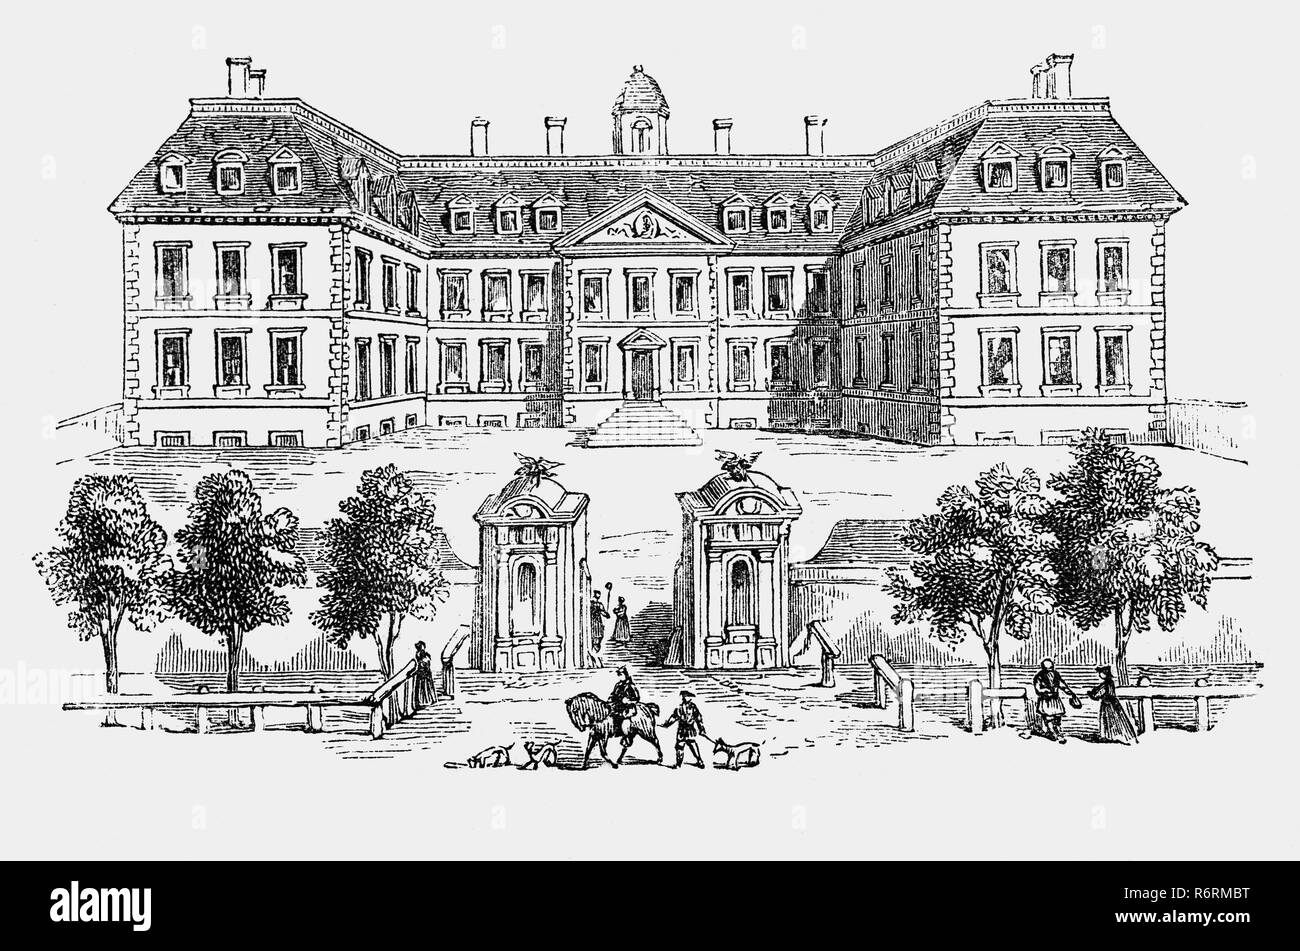 Clarendon House war eine Stadt, die Villa, die am Piccadilly in London, England stand, von den 1660er bis in die 1680er Jahre. Es war für die mächtigen Politiker Edward Hyde, 1. Earl of Clarendon erbaut und war die größte private Londoner Residenz nach der Restaurierung der Englischen Monarchie im Jahre 1660. 1667, im selben Jahr, der sein Haus fertig war, Clarendon fiel in Ungnade, nachdem die Ladung, die er Stein für Reparaturen von St. Paul's Cathedral, die nach dem großen Brand sein Haus zu bauen angeeignet hat. Im selben Jahr, am 14. Juni 1667, Samuel Pepys notierte in seinem Tagebuch: "... einige unhöfliche Leute wurden Stockfoto